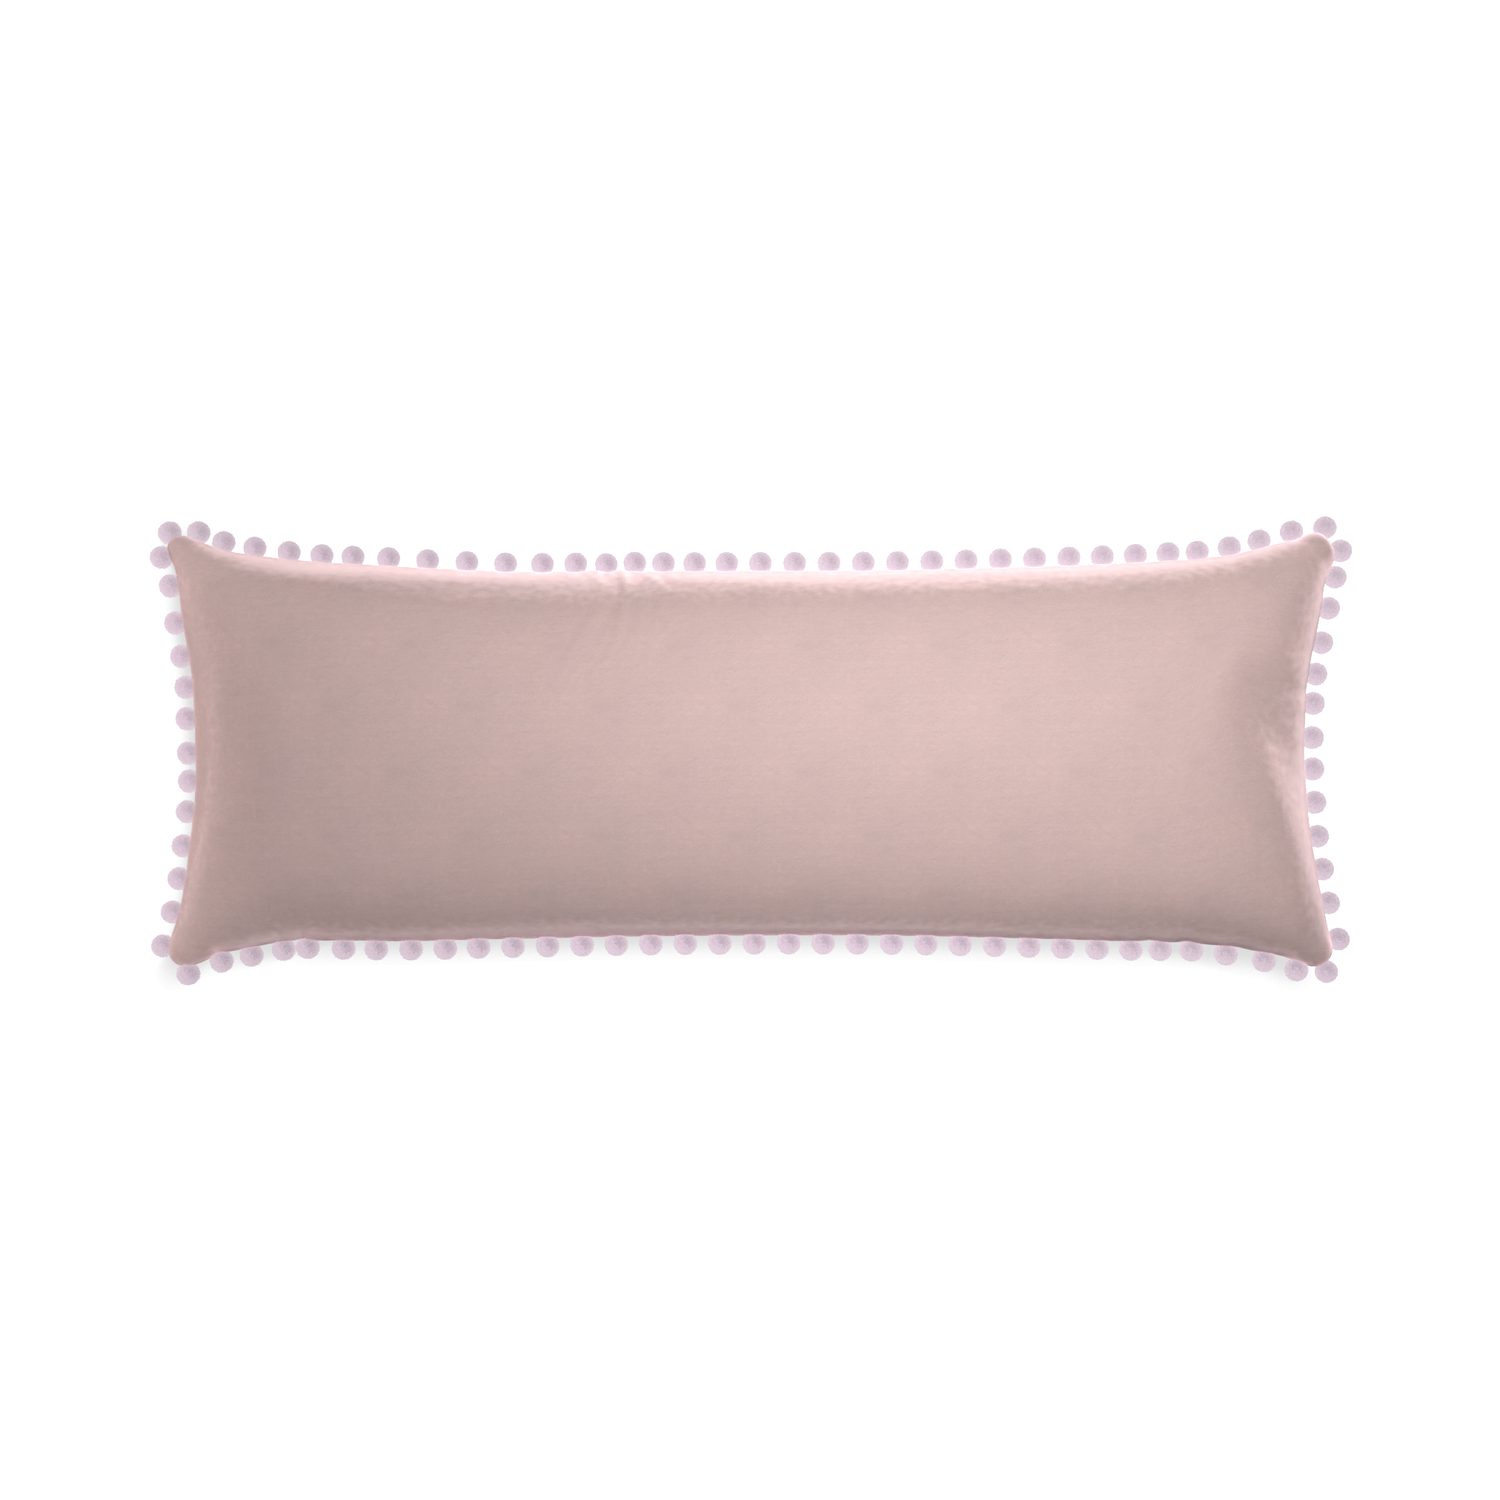 Xl-lumbar rose velvet custom pillow with l on white background